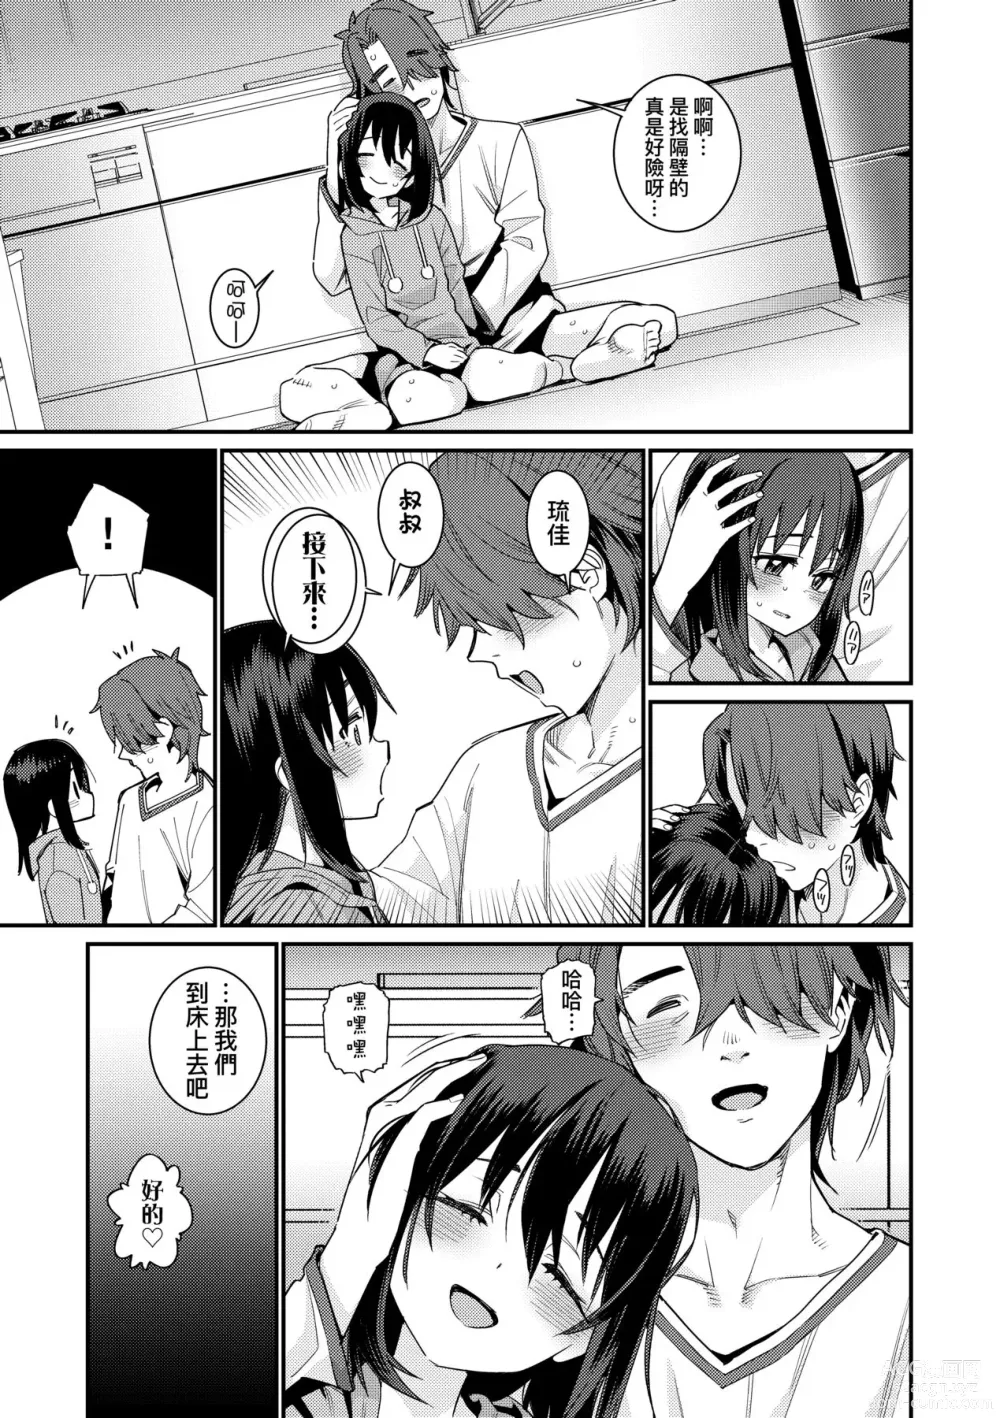 Page 204 of manga Itoshiki Wagaya (decensored)